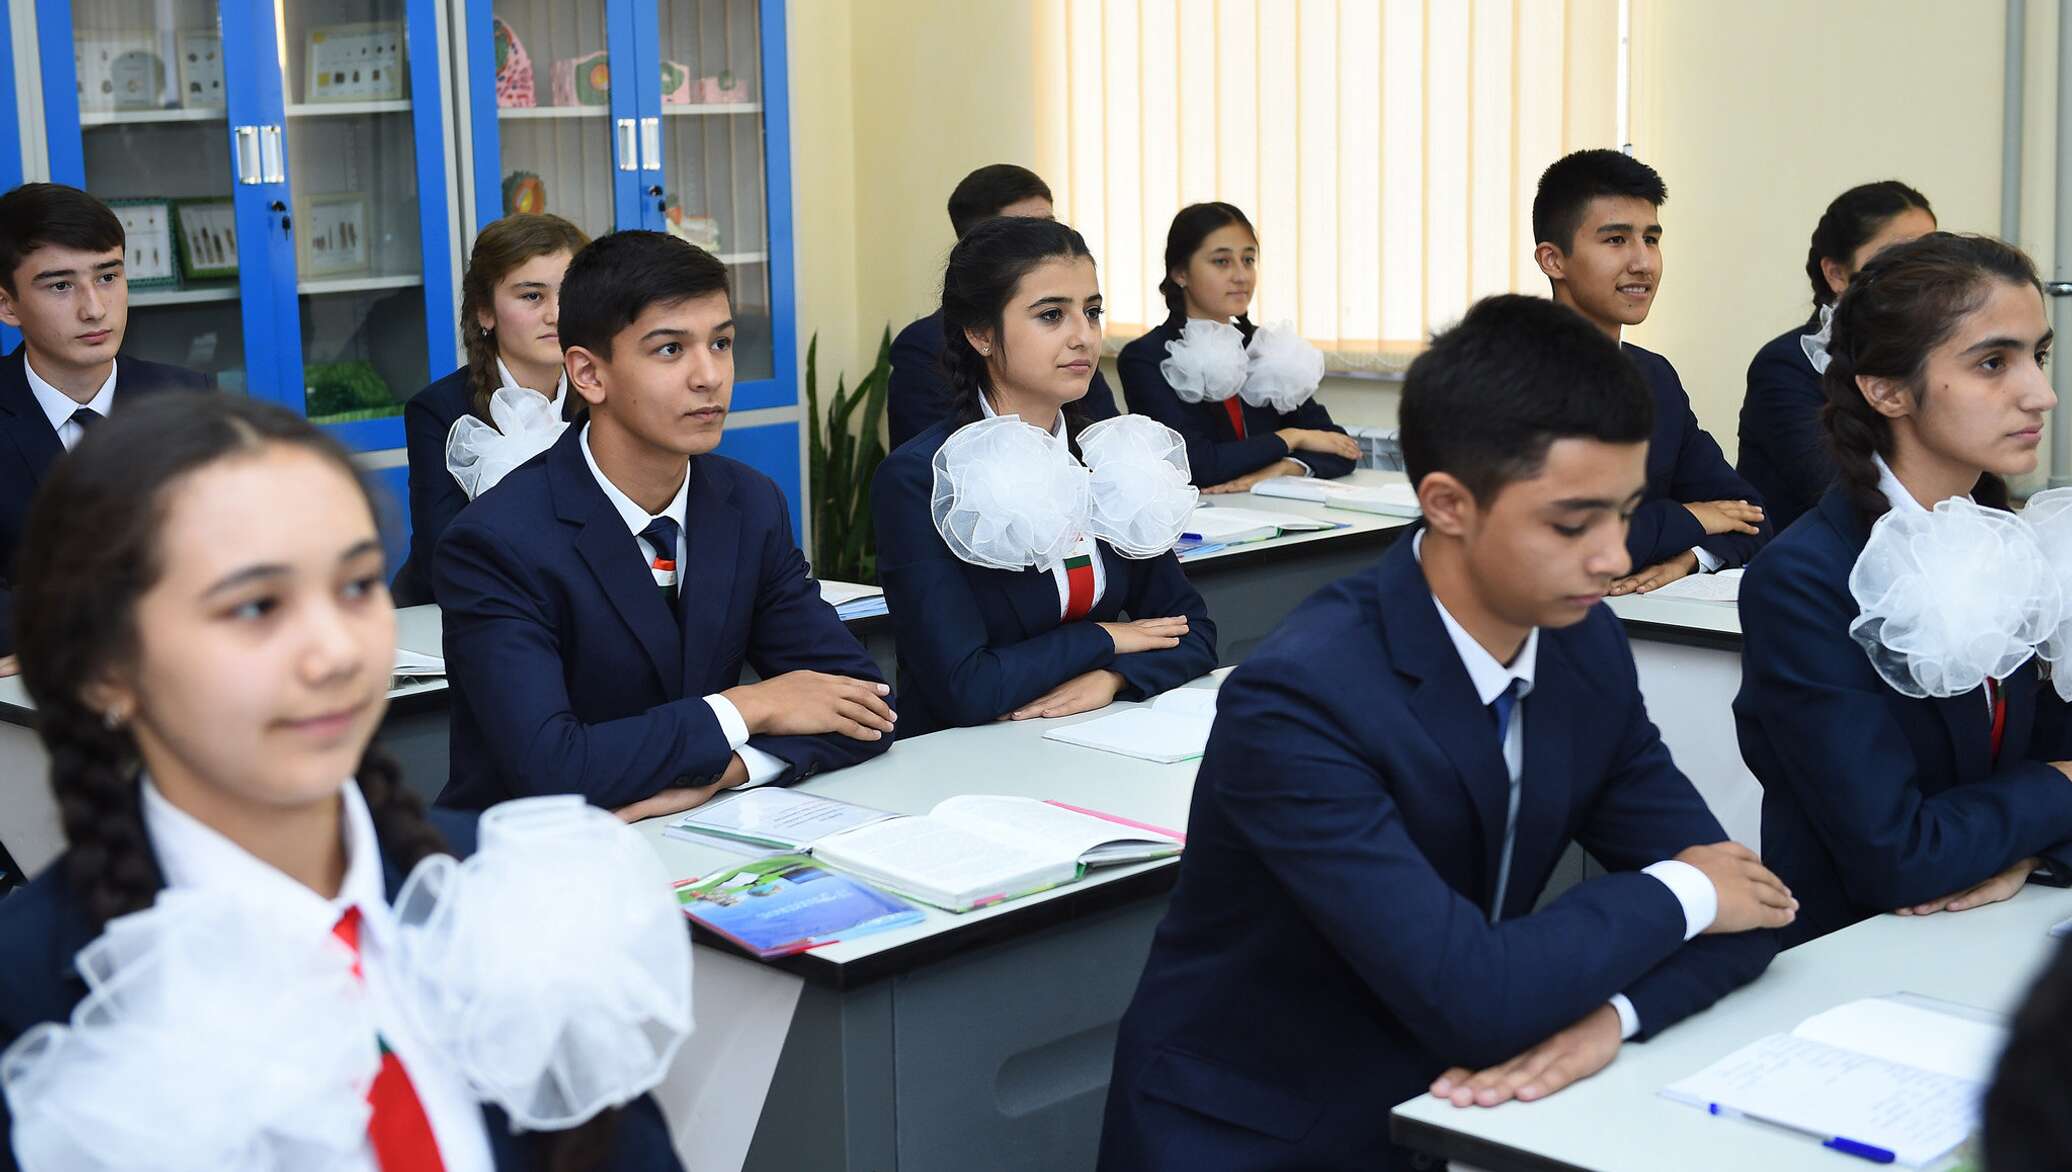 Класс таджик. Такжикская школа в Таджикистане. Русские школы в Таджикистане. Русскоязычные школы в Таджикистане. Российско-таджикская школа в Турсунзаде.